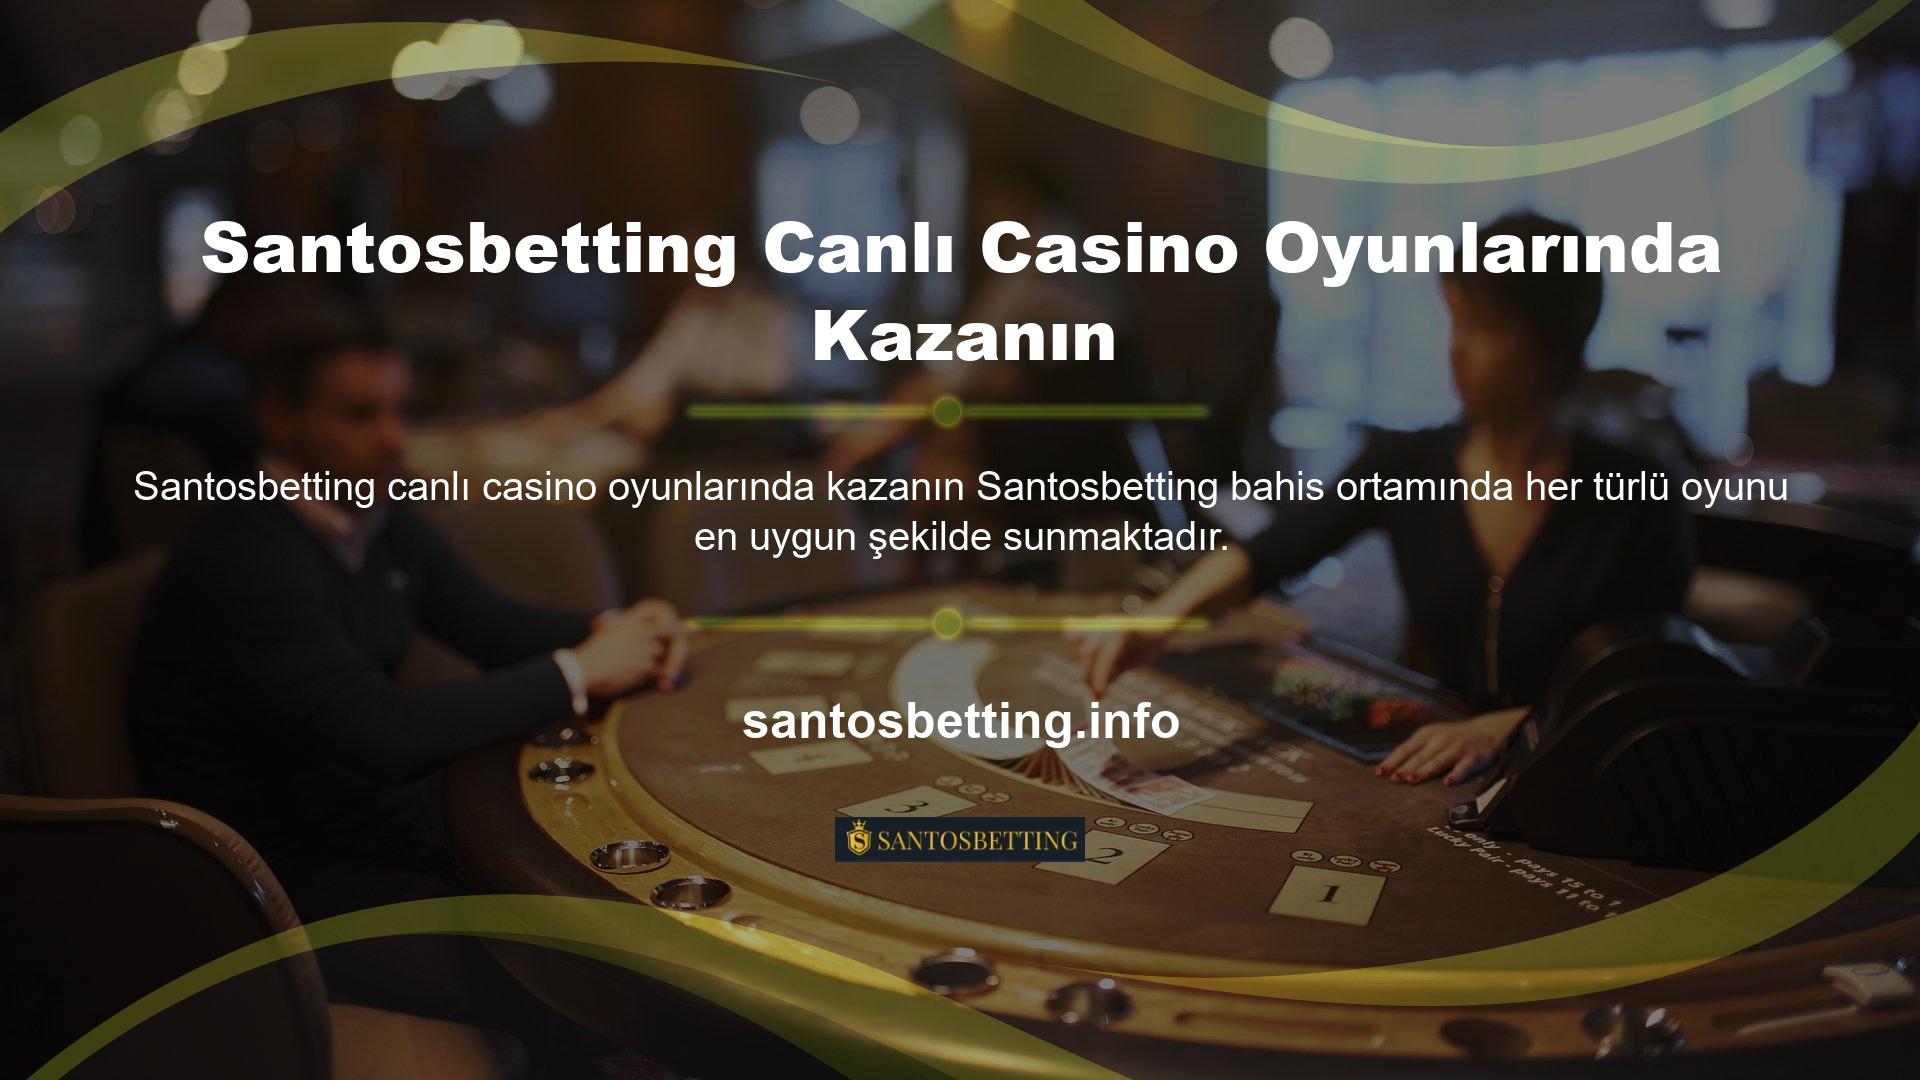 Bunun için hemen Santosbetting web sitesinin canlı casino bölümünü ziyaret edebilirsiniz